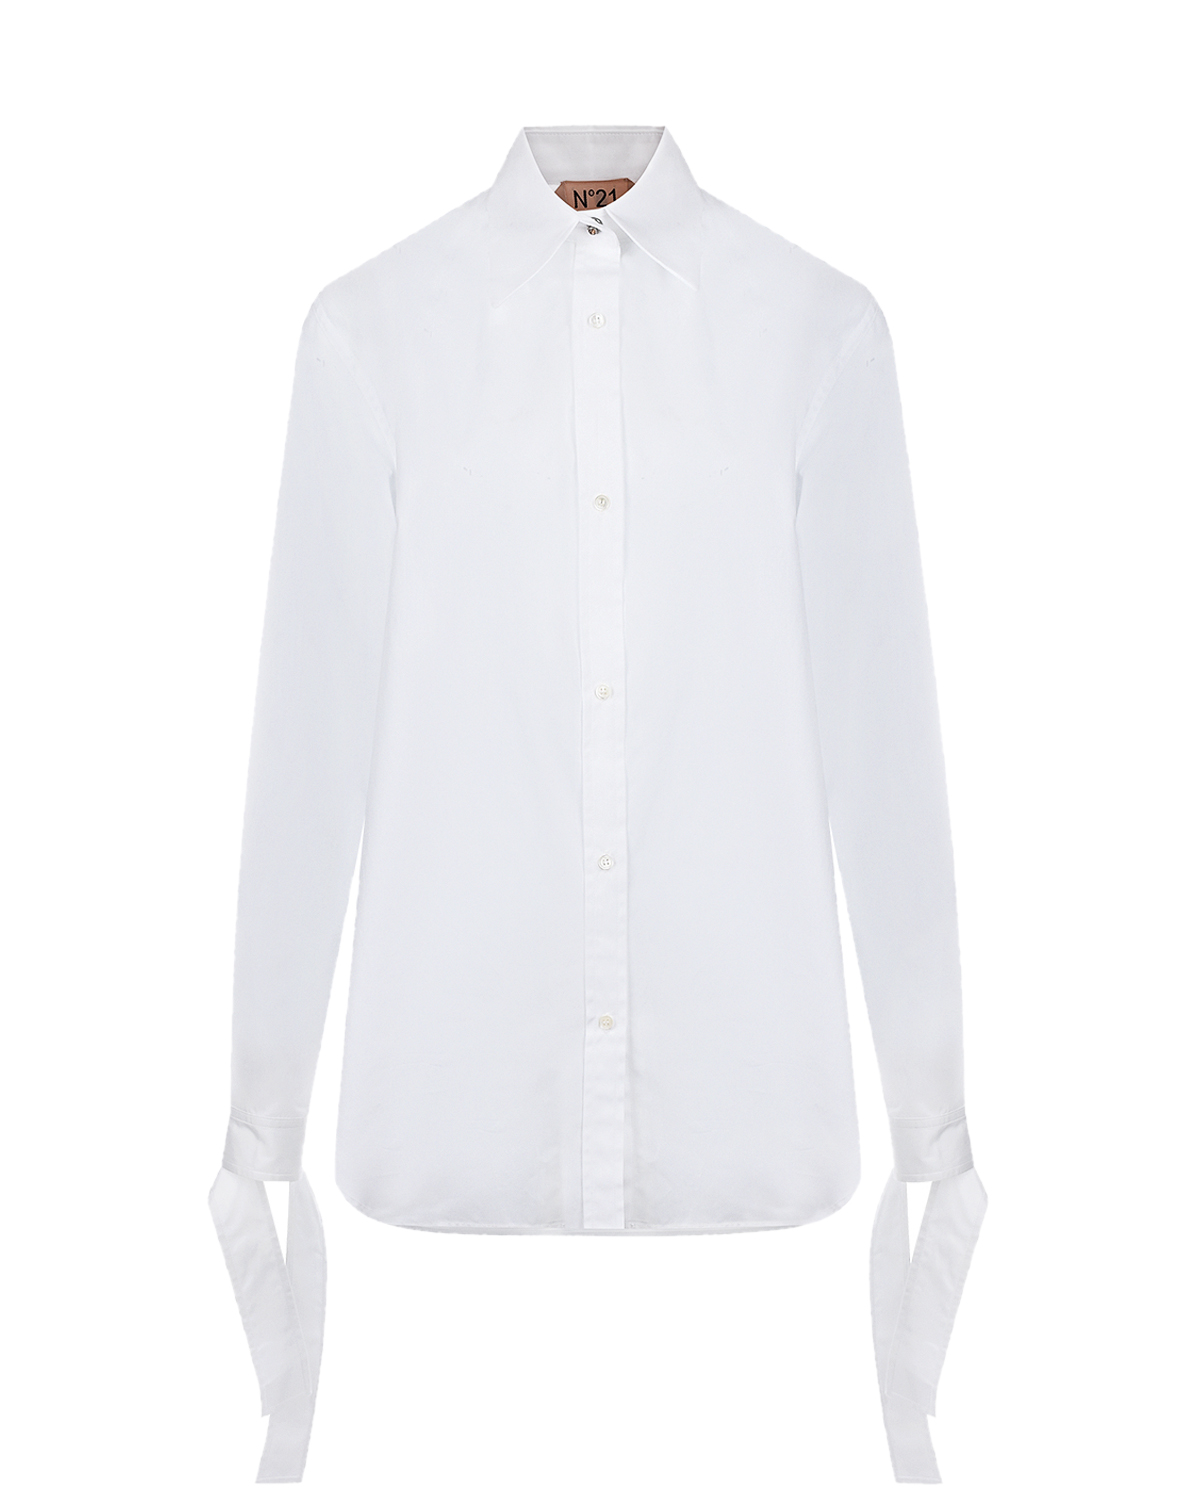 Удлиненная белая рубашка No. 21, размер 42, цвет белый - фото 1